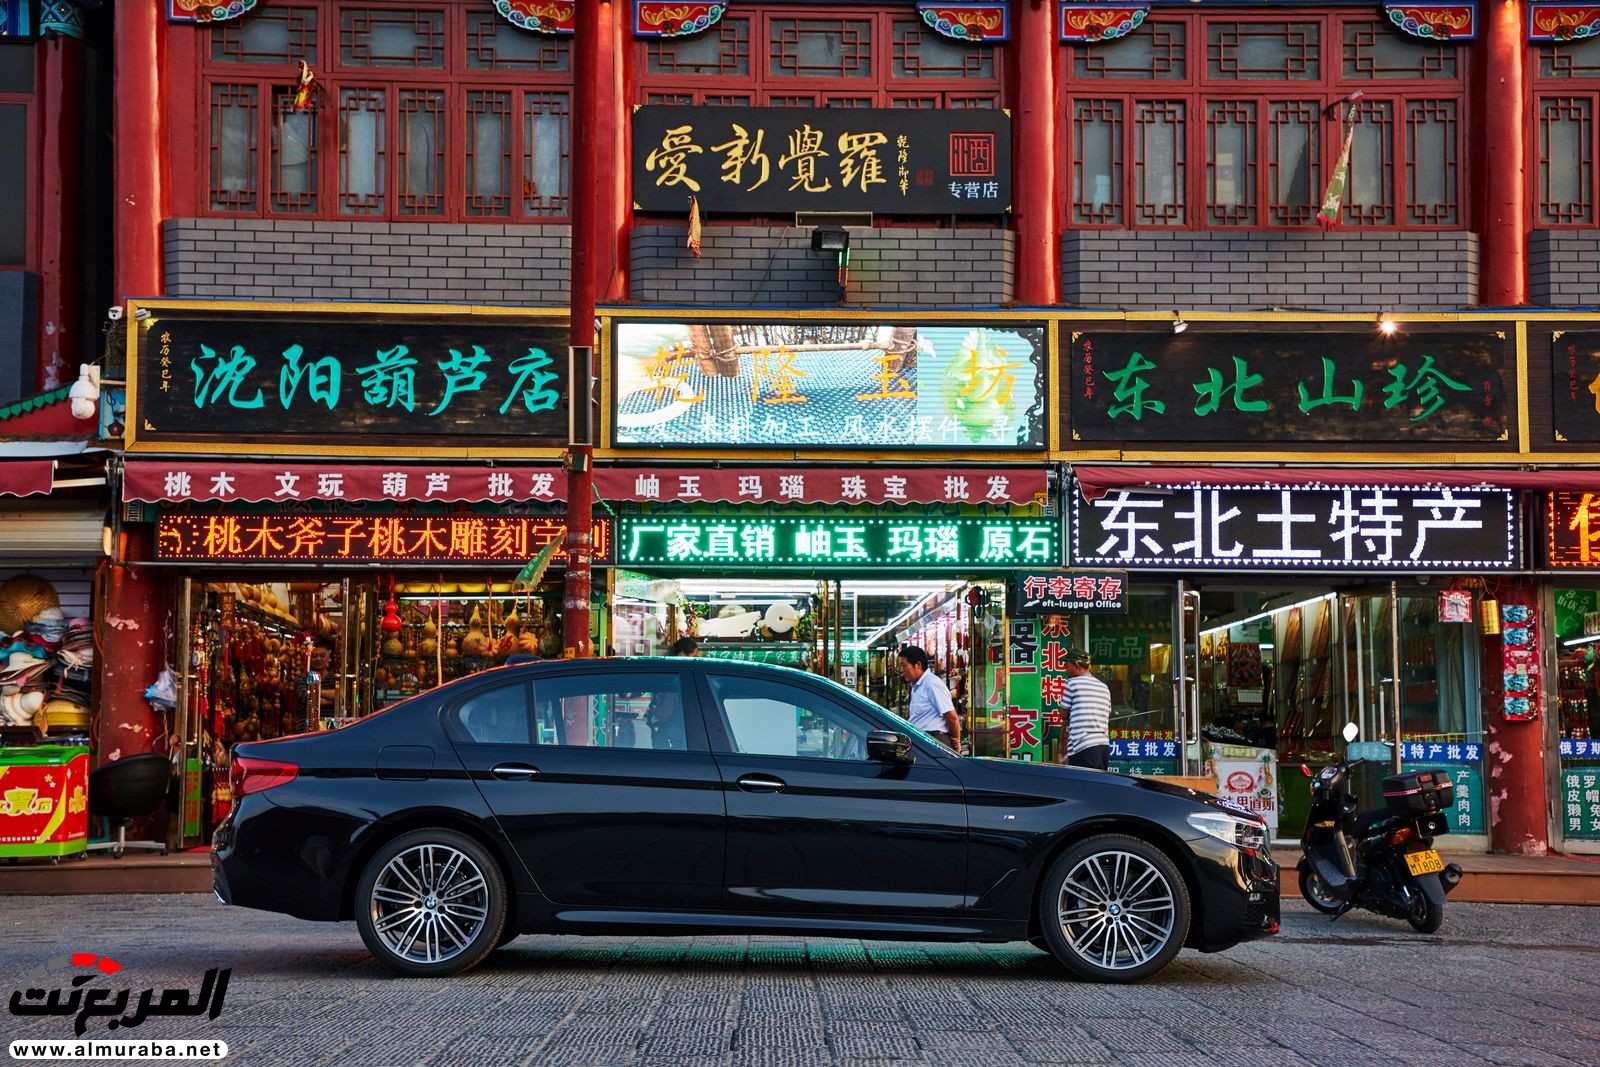 بي إم دبليو أصبحت صانعة السيارات الفاخرة الأكثر مبيعاً في الصين 4